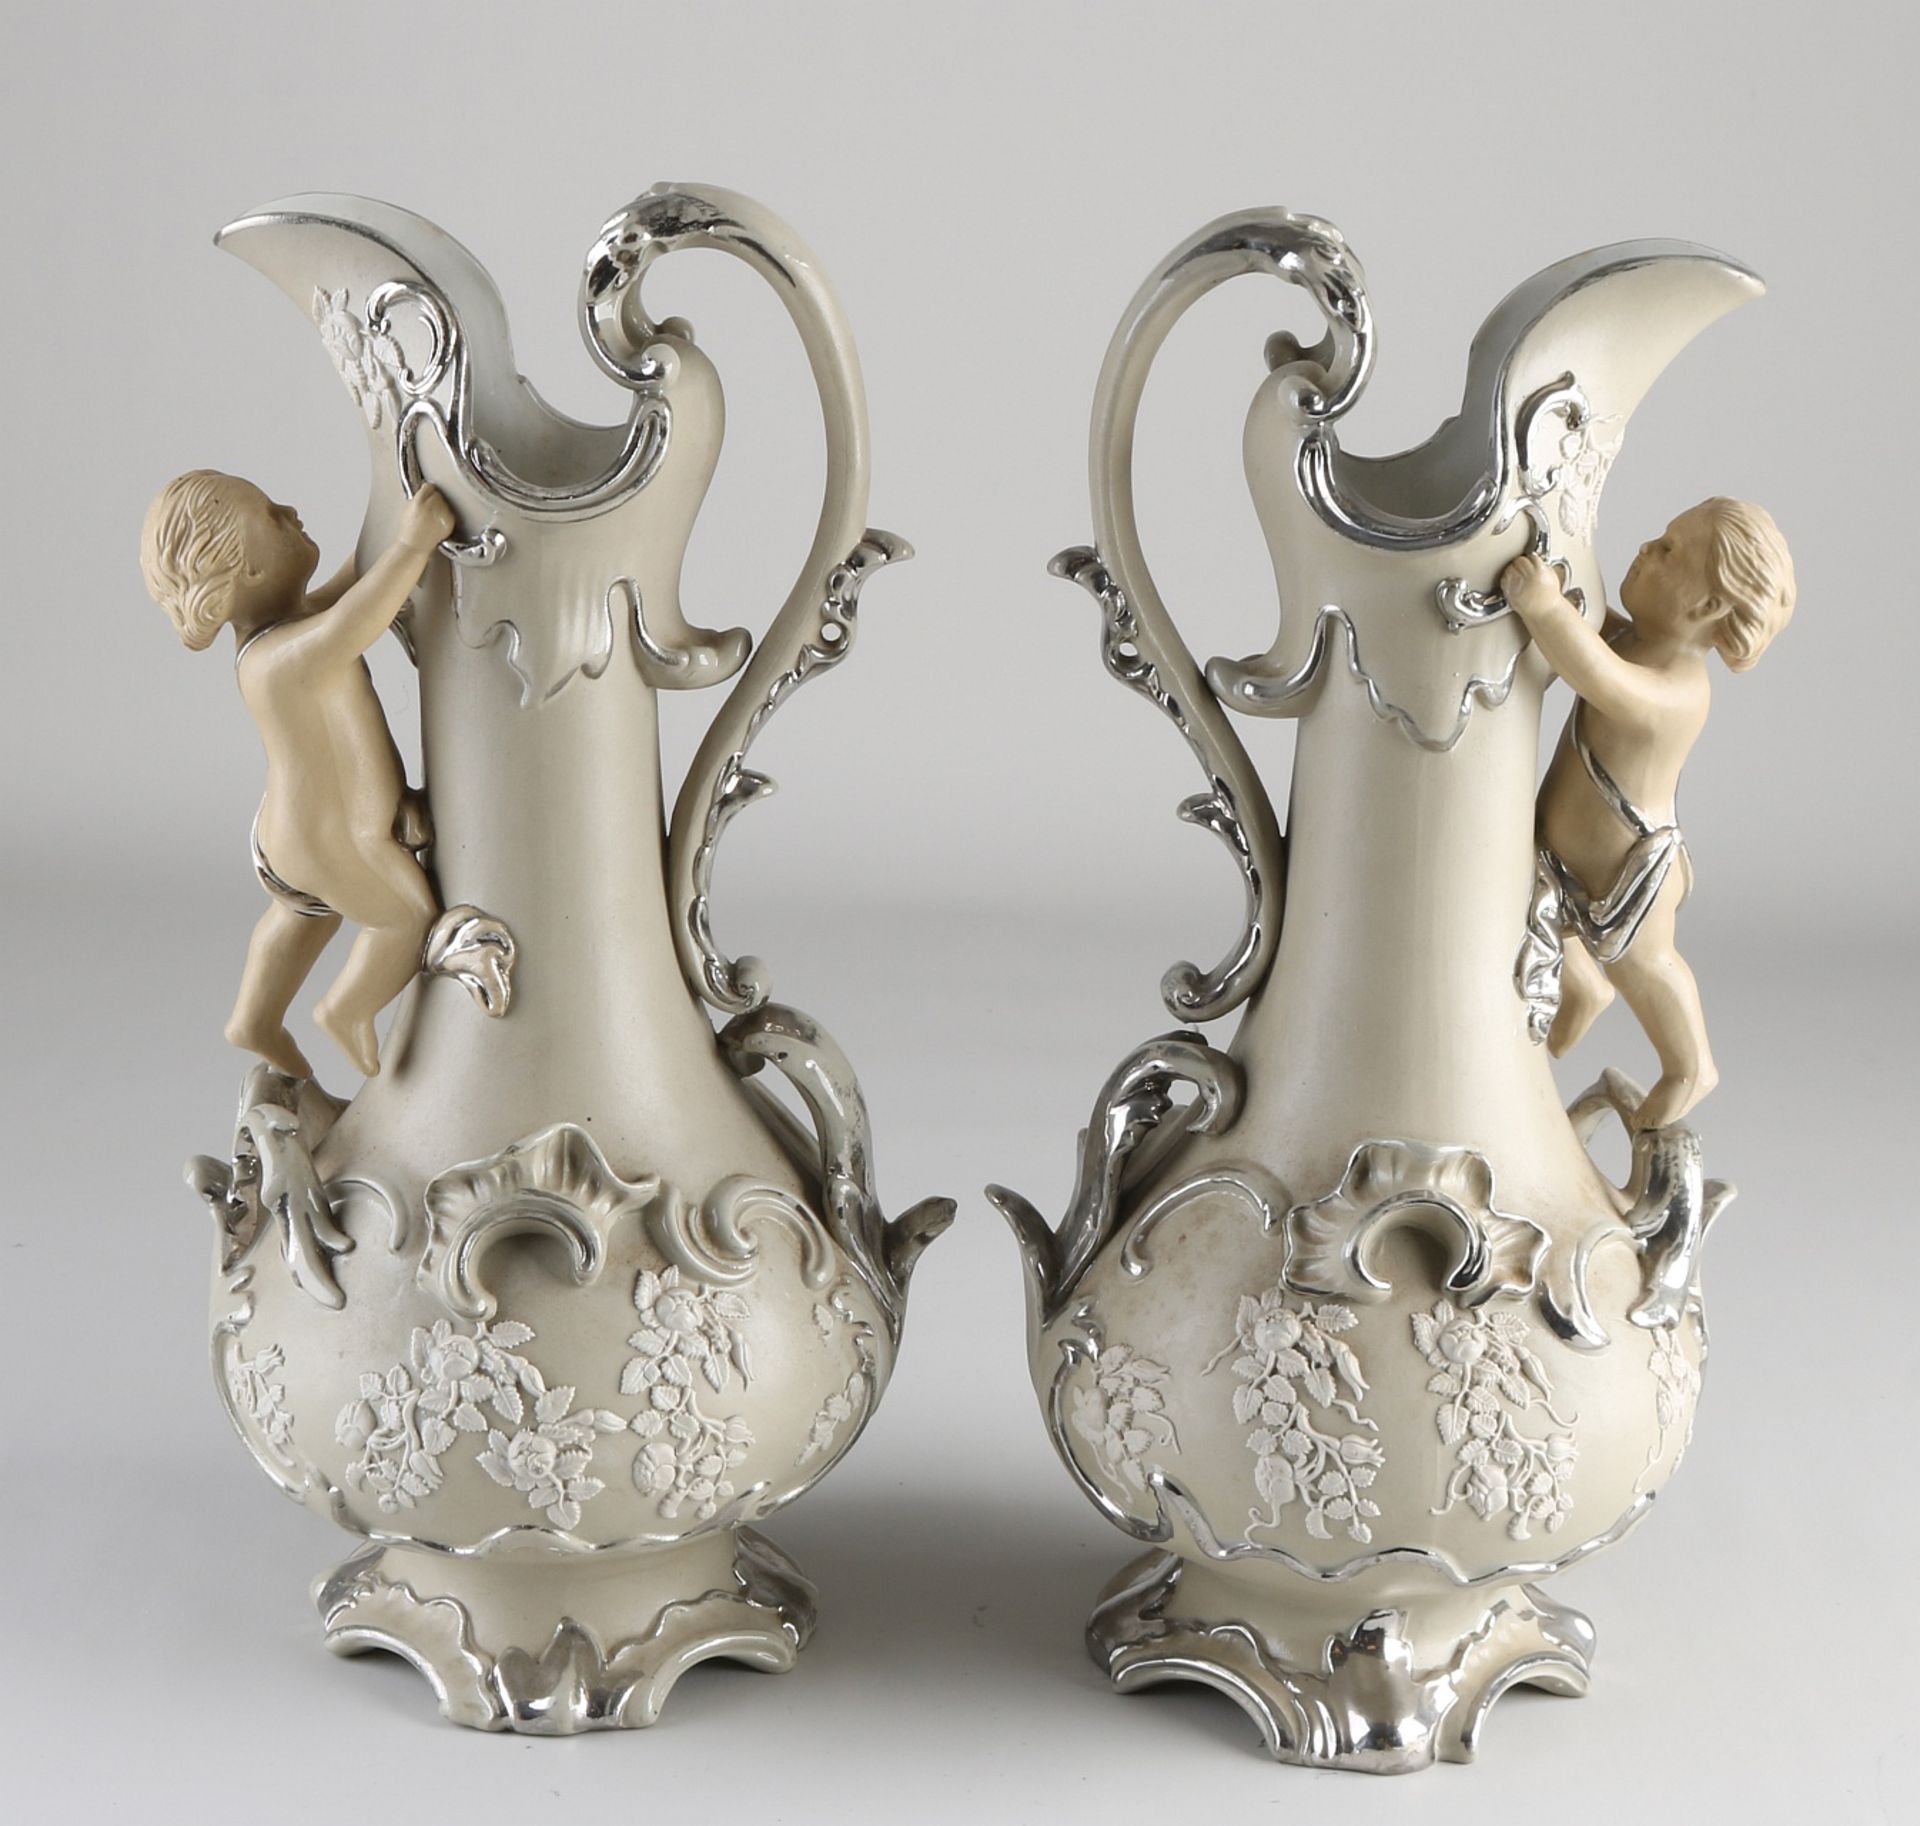 Two Villeroy & Boch jugs, 1880